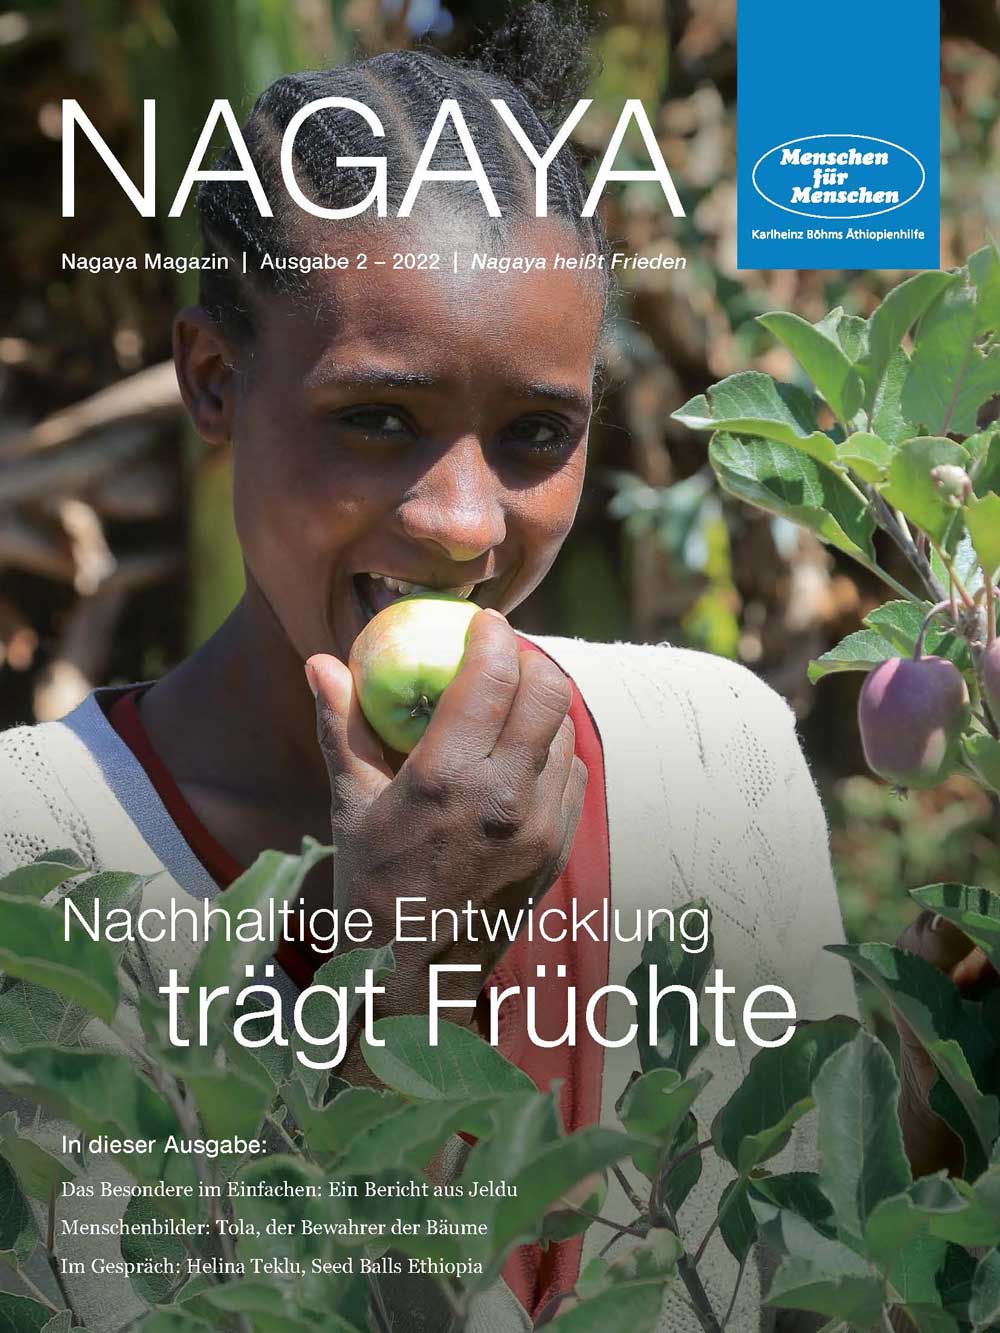 Titelbild des Nagaya Magazins von Menschen für Menschen Ausgabe 2, 2022